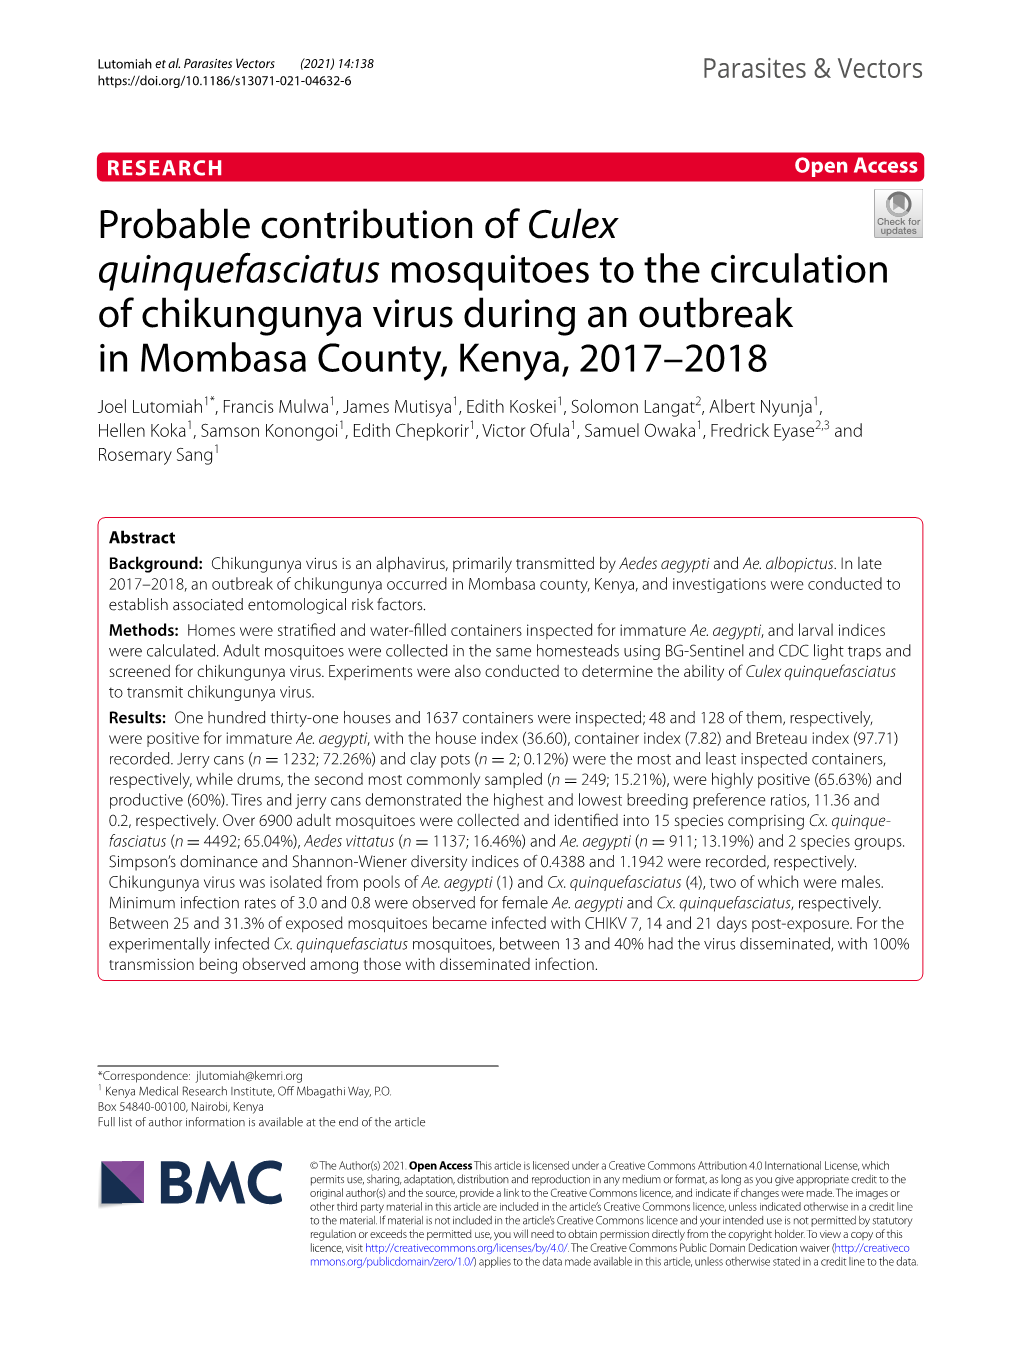 Probable Contribution of Culex Quinquefasciatus Mosquitoes to The